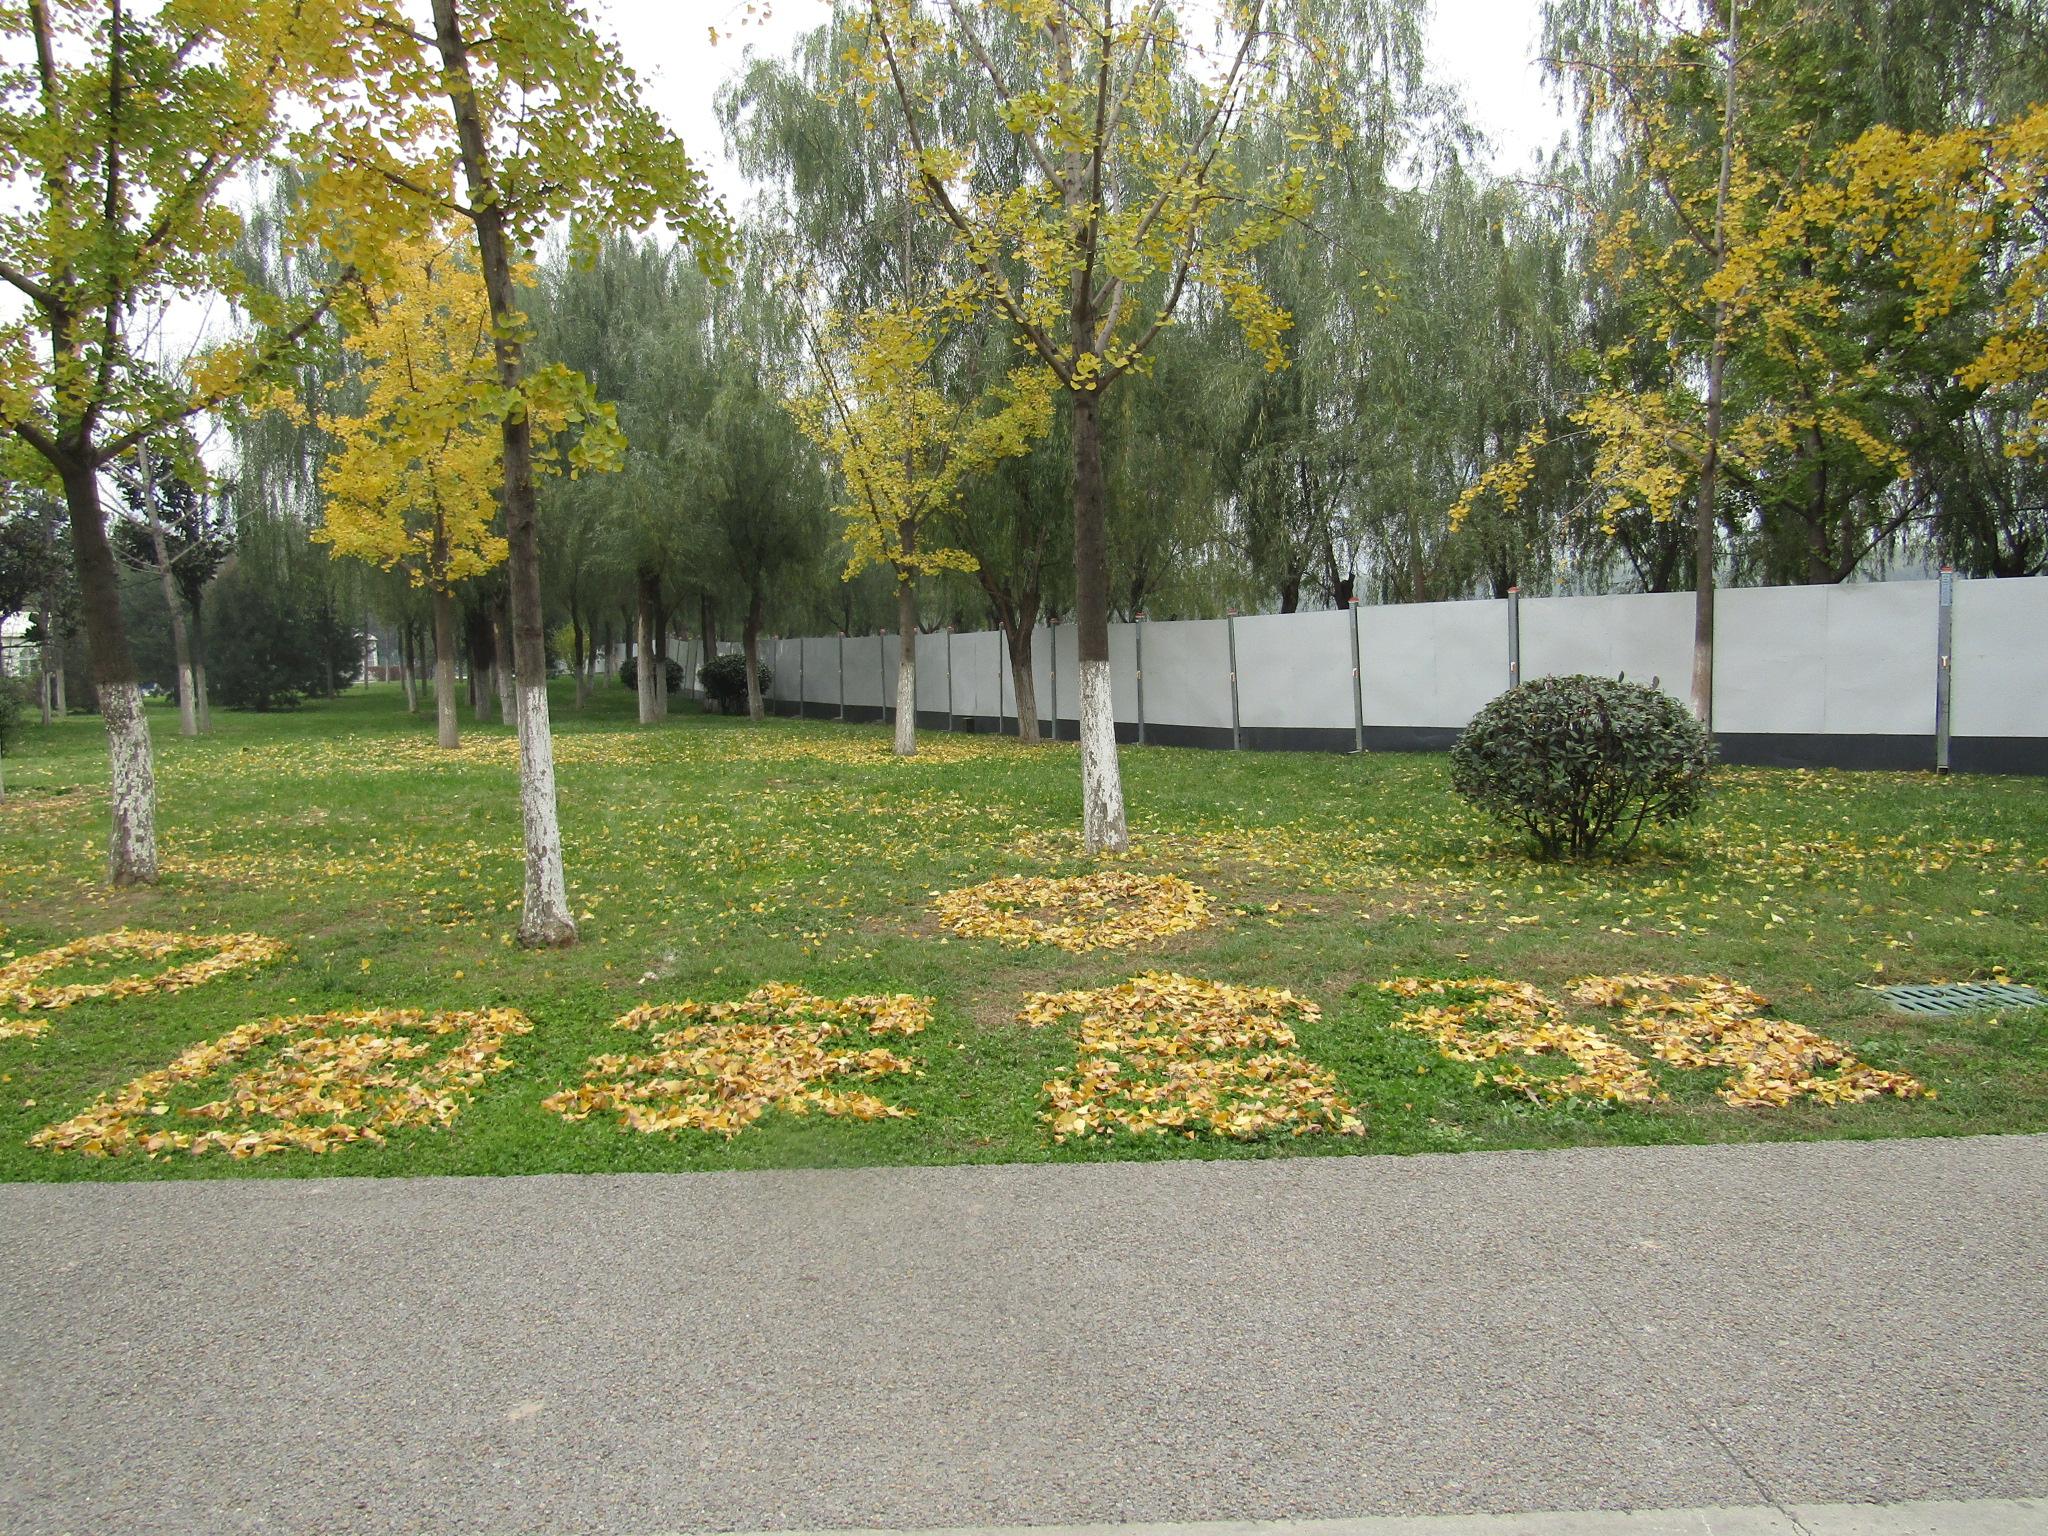 遗址公园表示,公园里银杏树比较多,最近落叶了,树叶颜色也都不一样